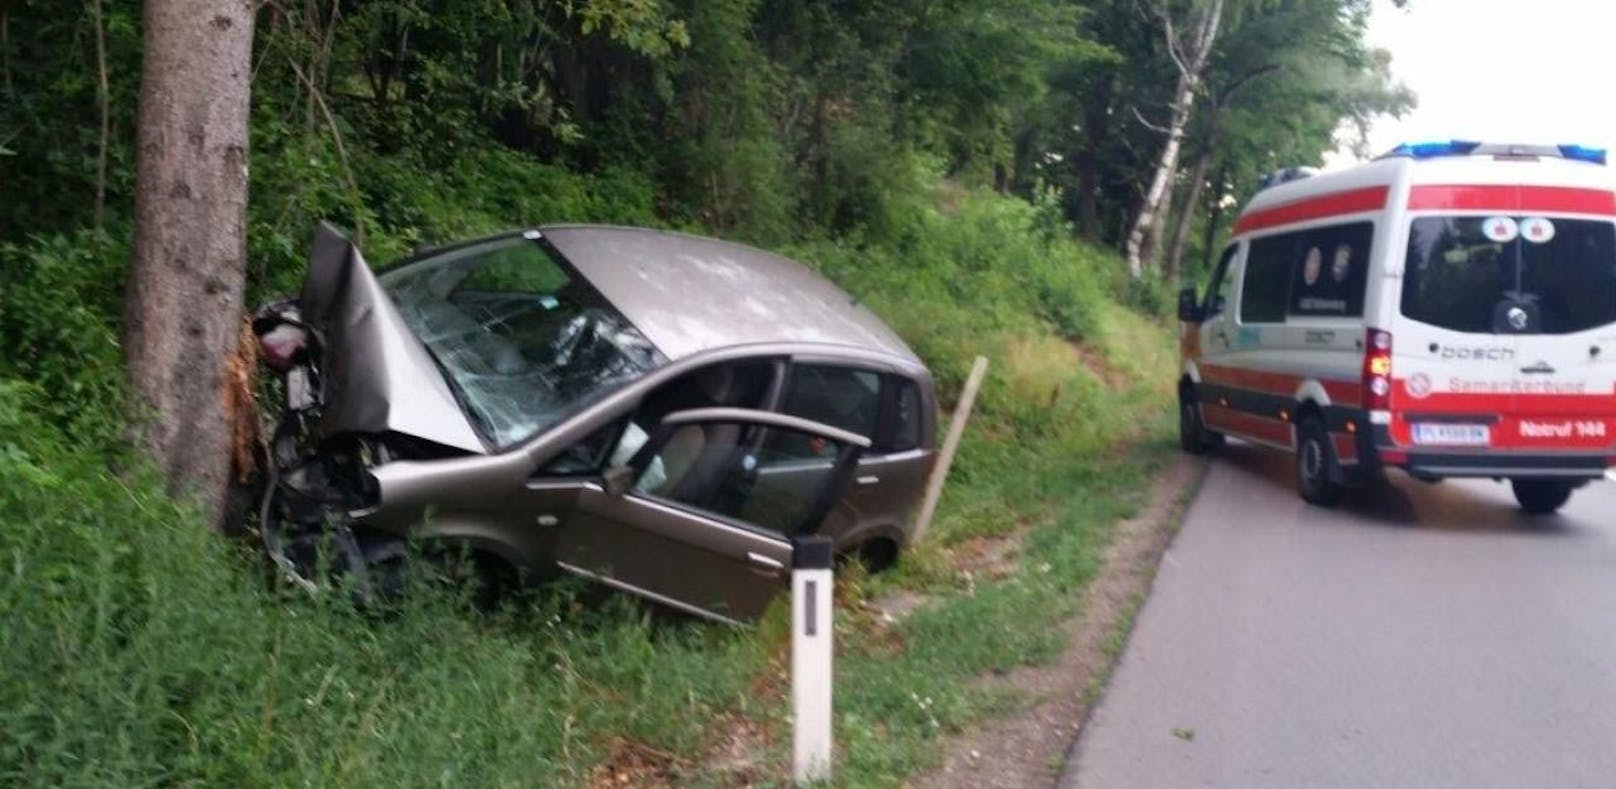 Heftiger Unfall: Auto kracht frontal gegen Baum